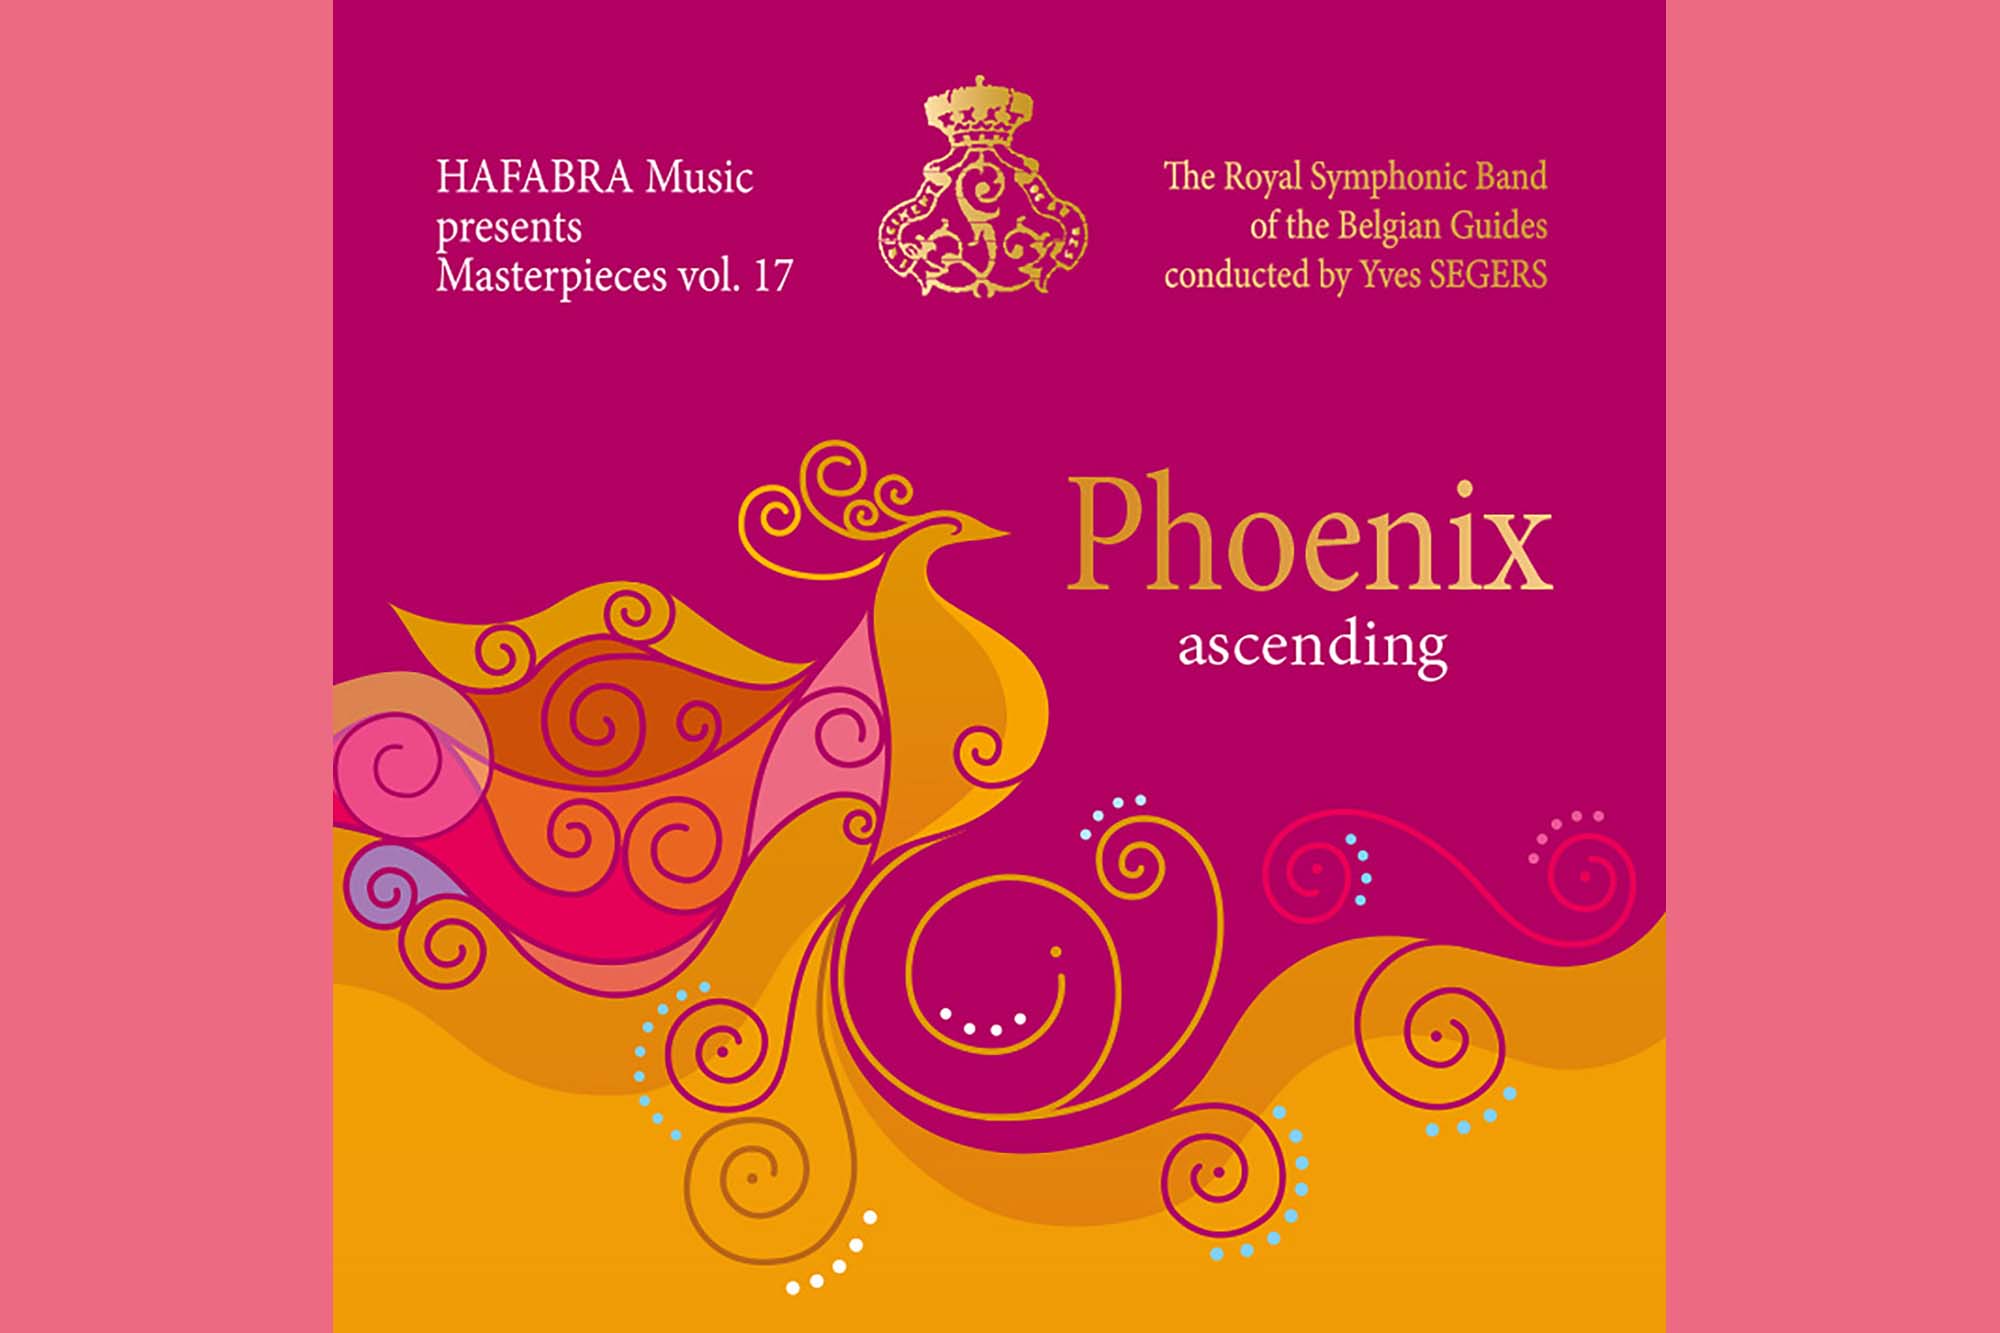 Phoenix (Bild: HAFABRA Music)